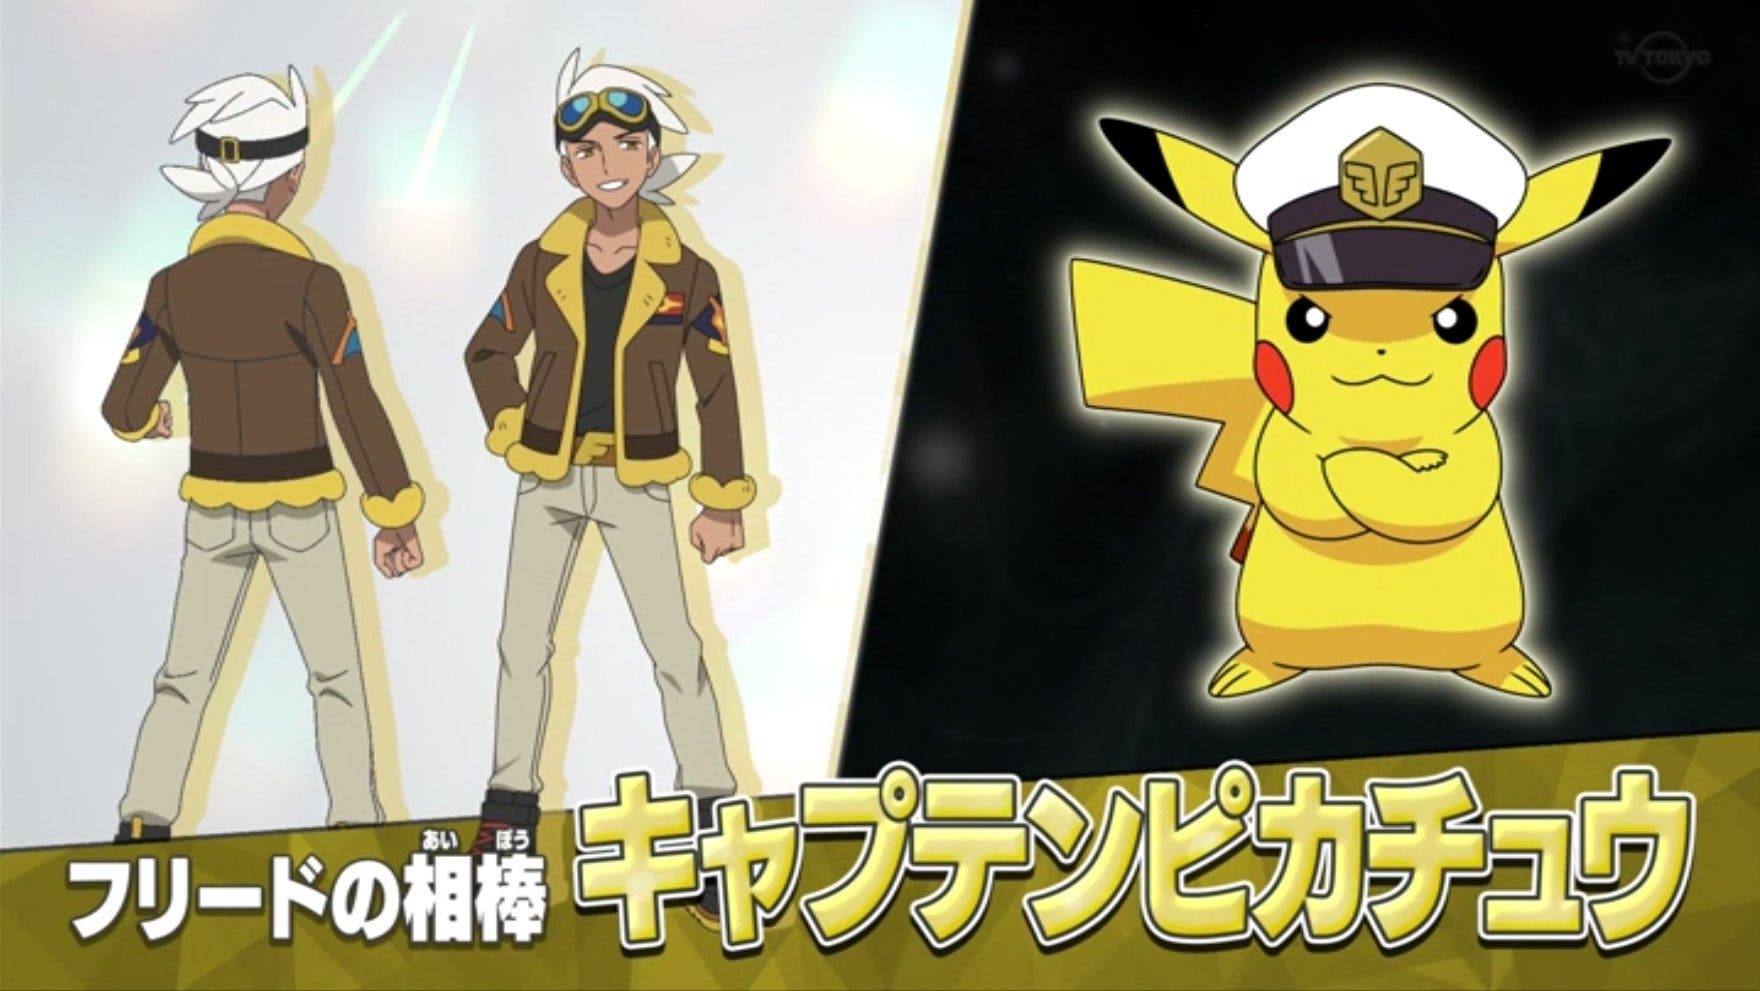 El nuevo anime de Pokémon detalla a Friede, un nuevo personaje que tiene un Pikachu